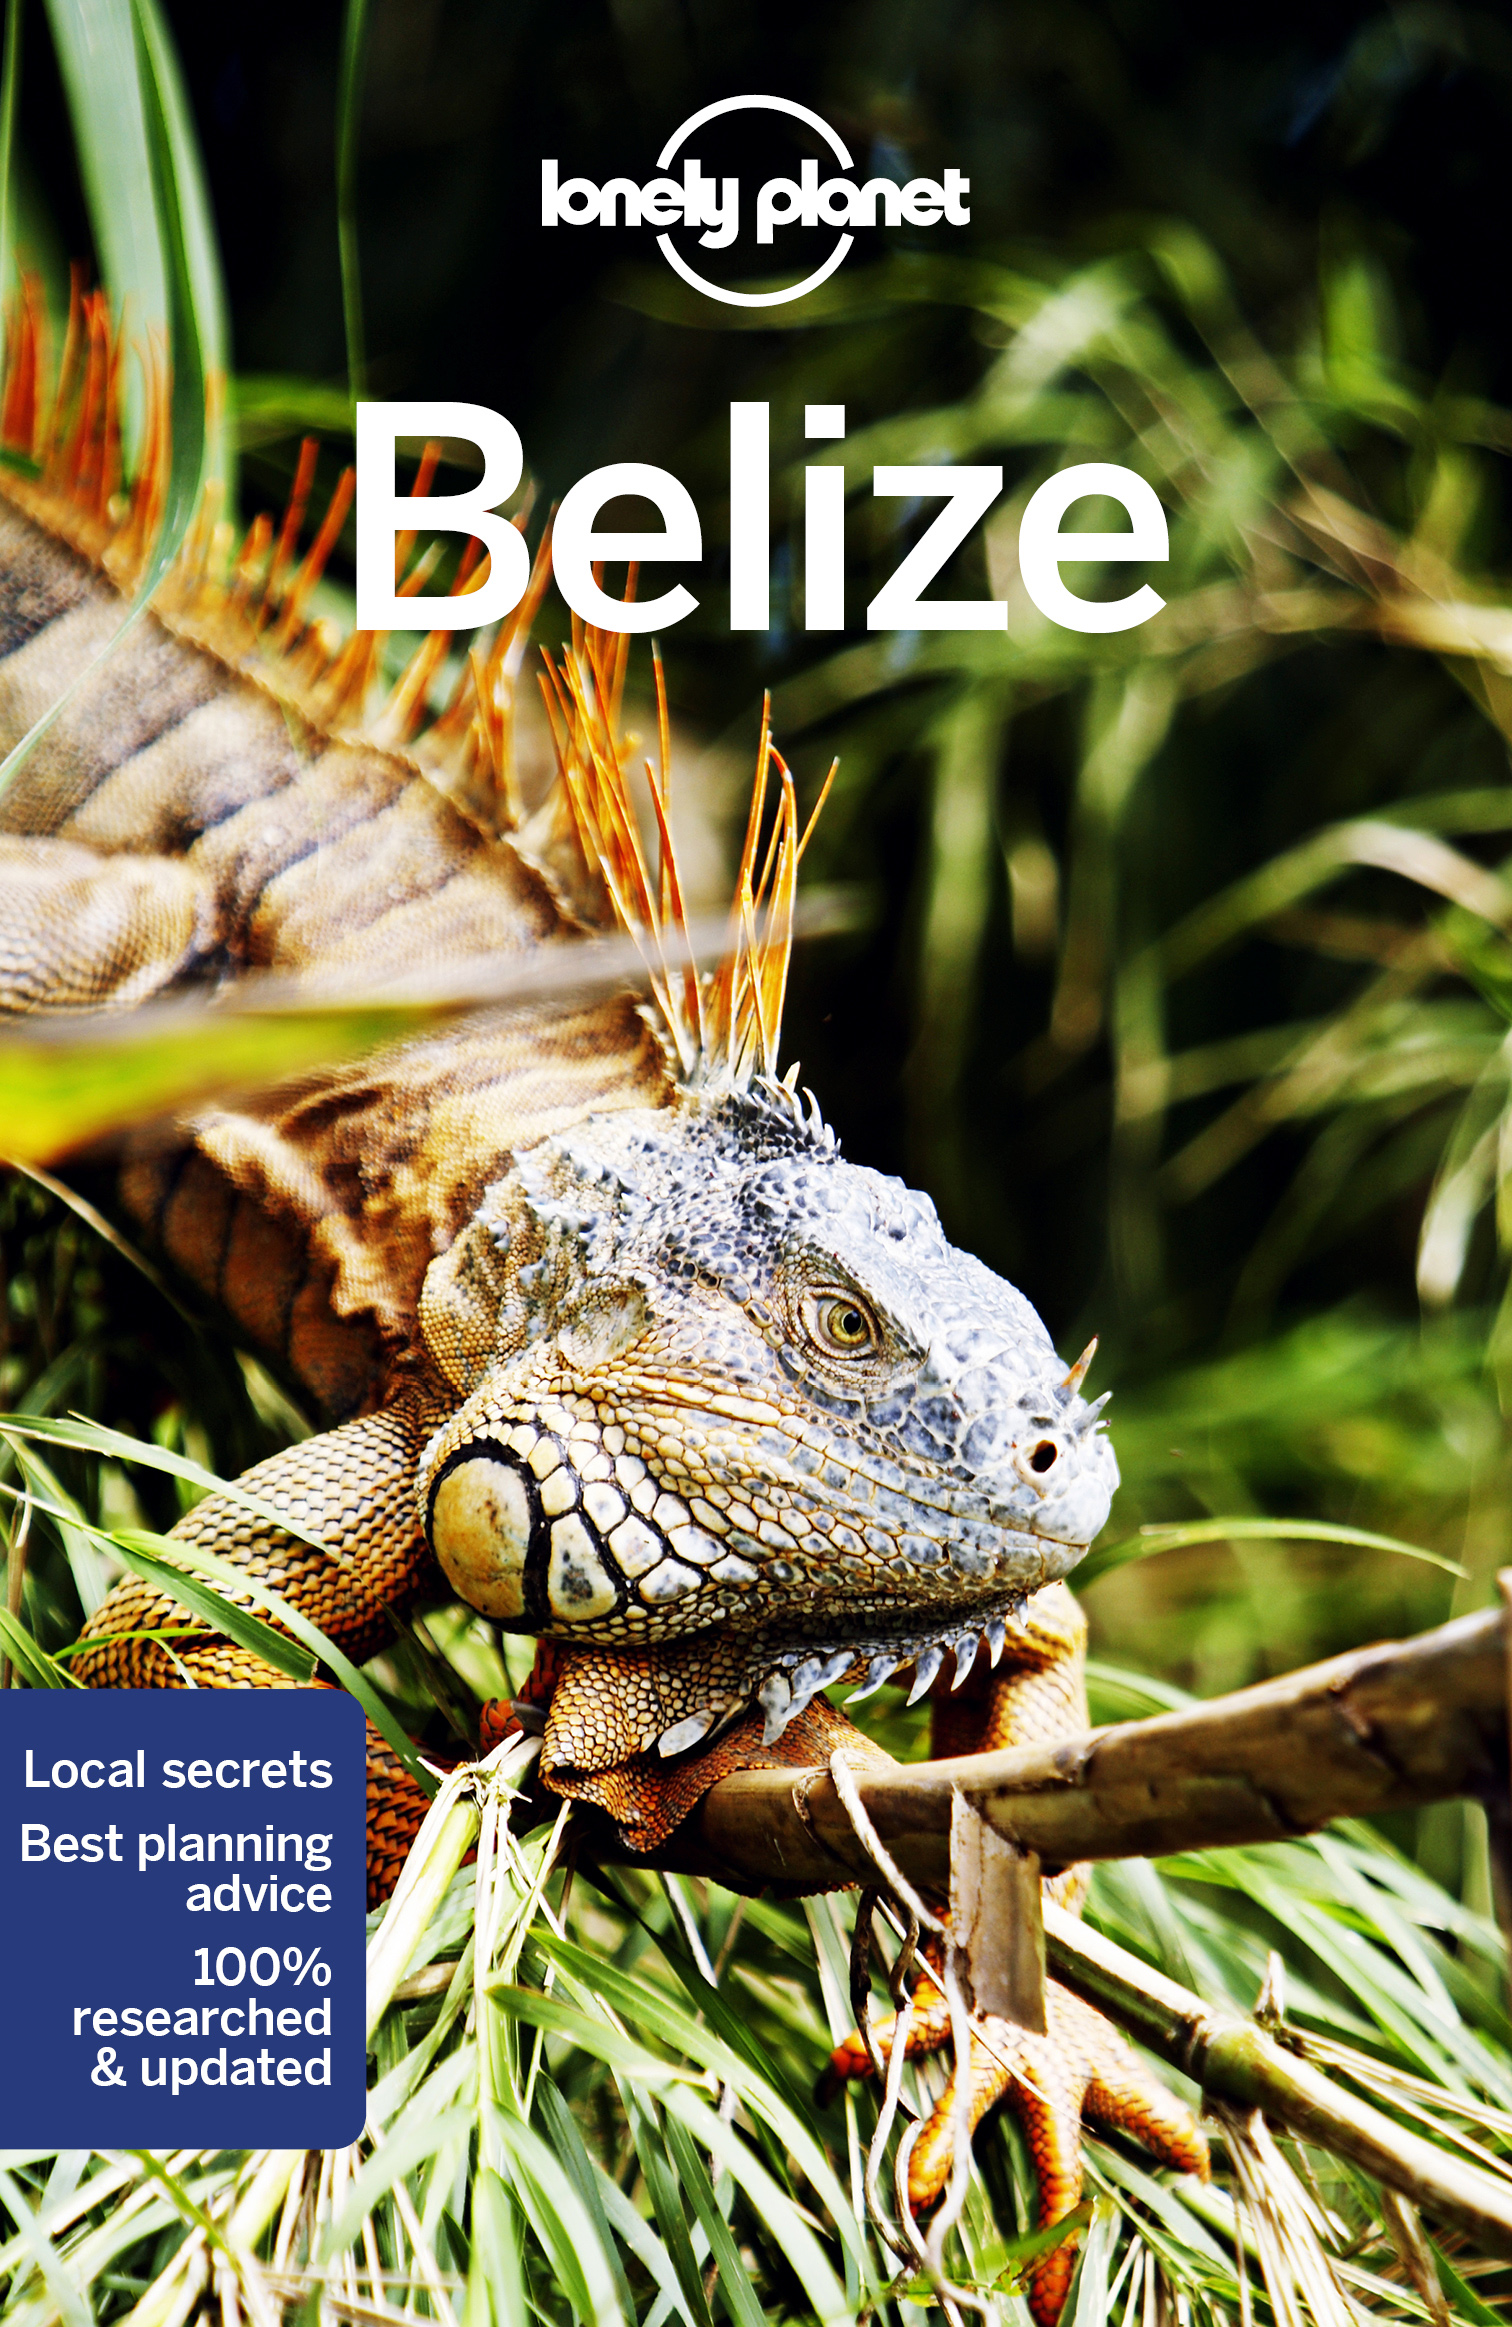 průvodce Belize 8. edice anglicky Lonely Planet